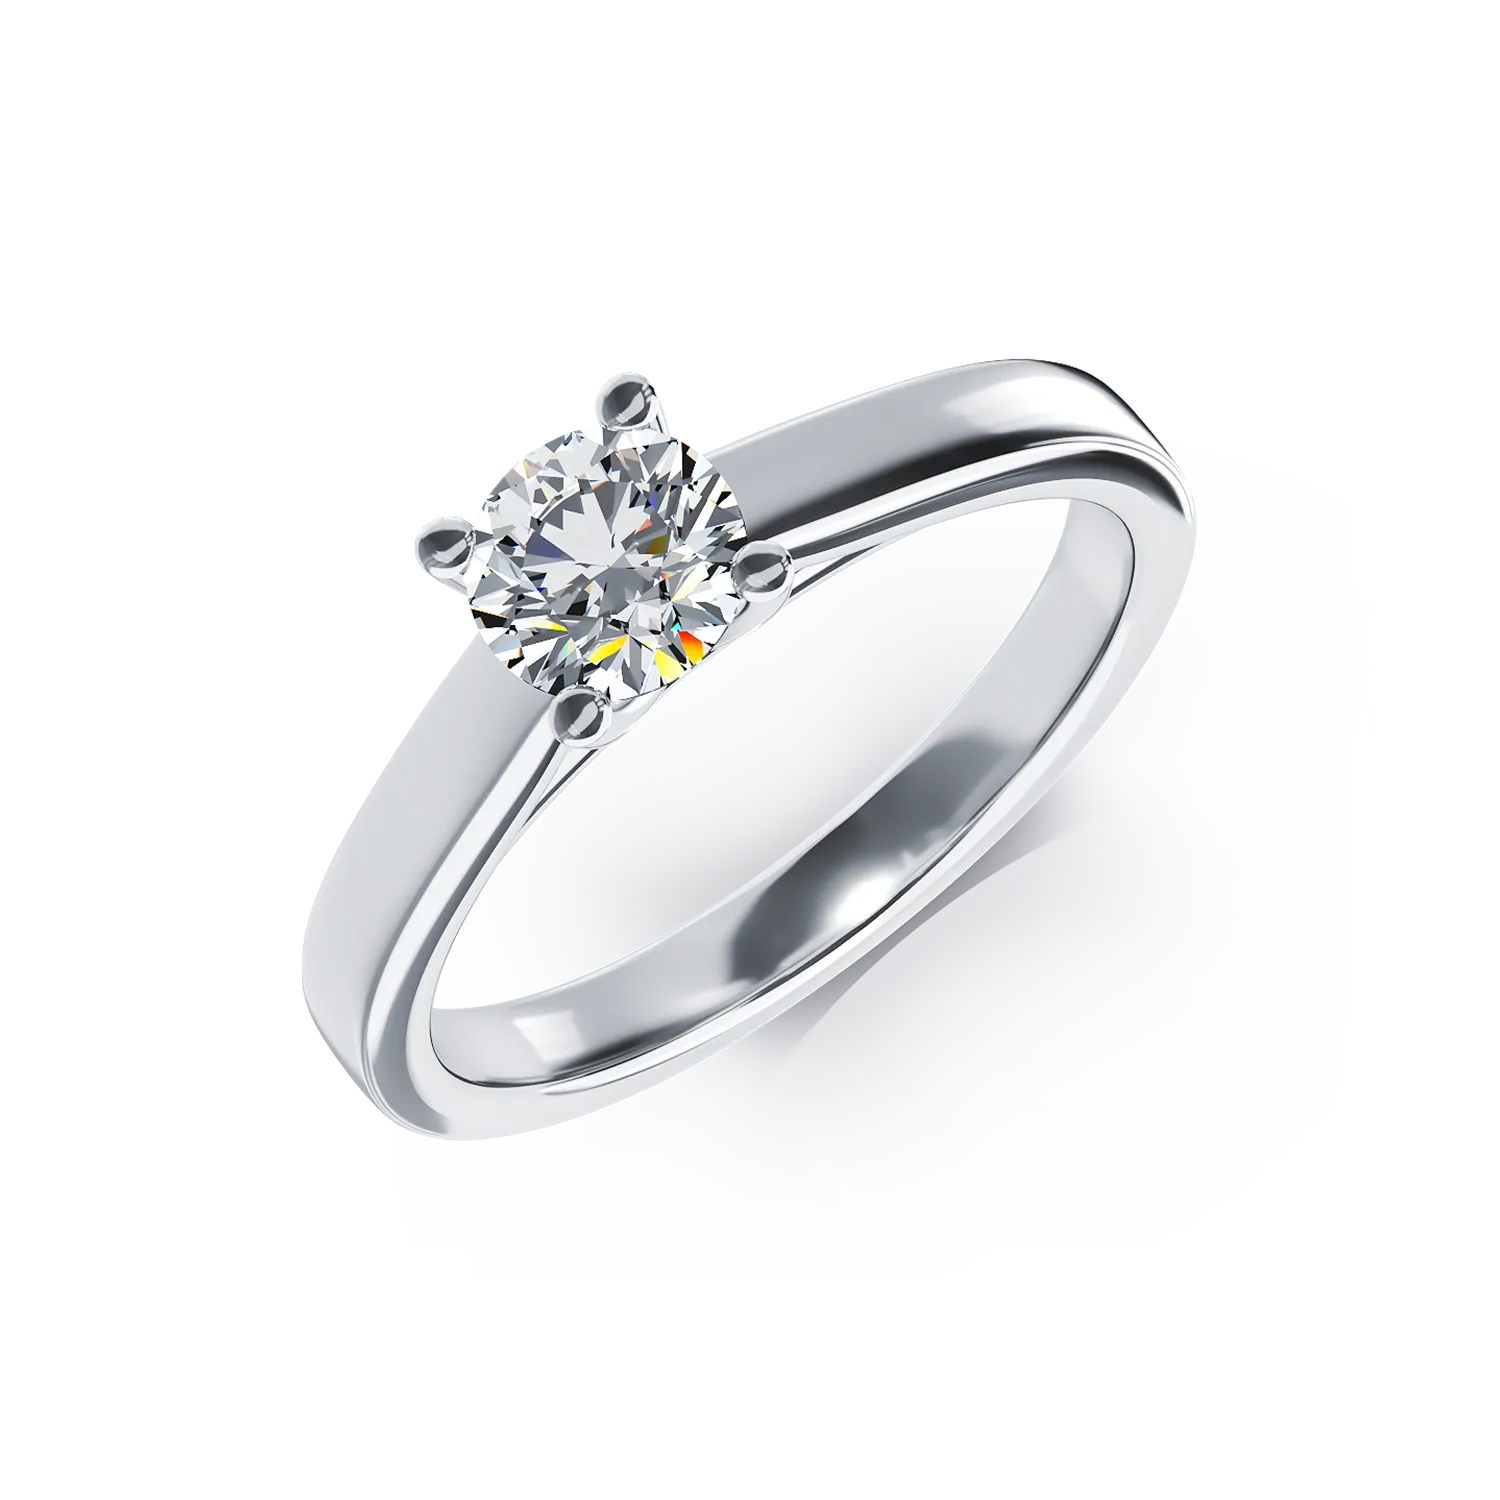 Eljegyzési gyűrű 18K-os fehér aranyból 0,5ct gyémánttal. Gramm: 4,3